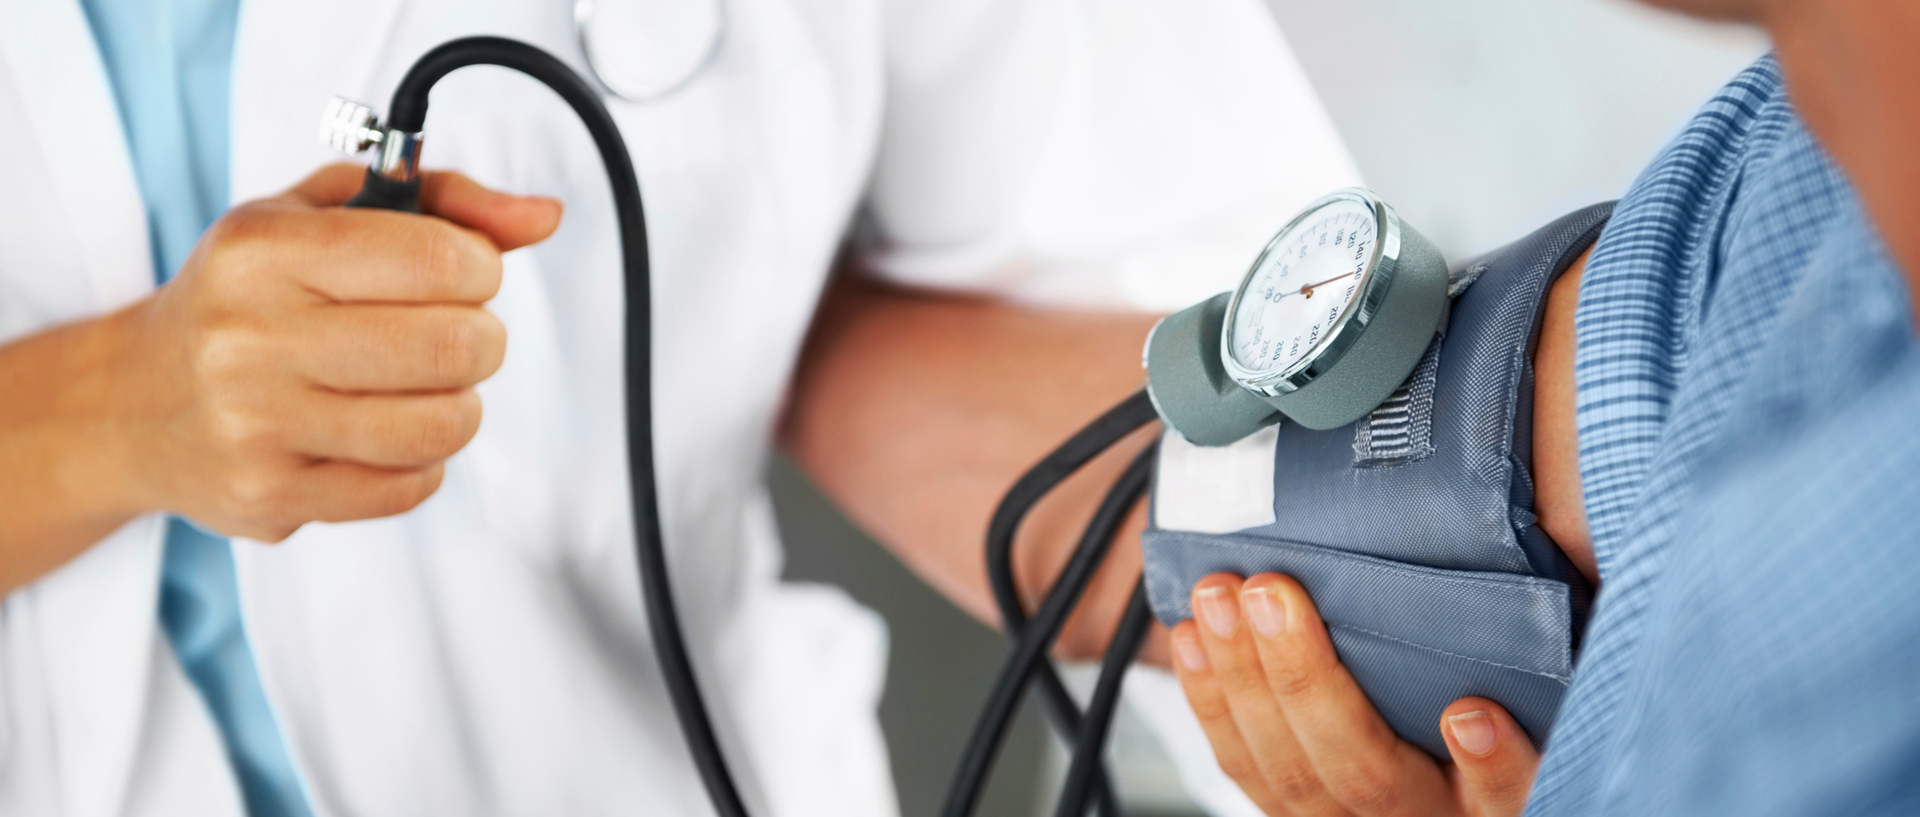 طريقة قياس ضغط الدم بدون جهاز بالصور